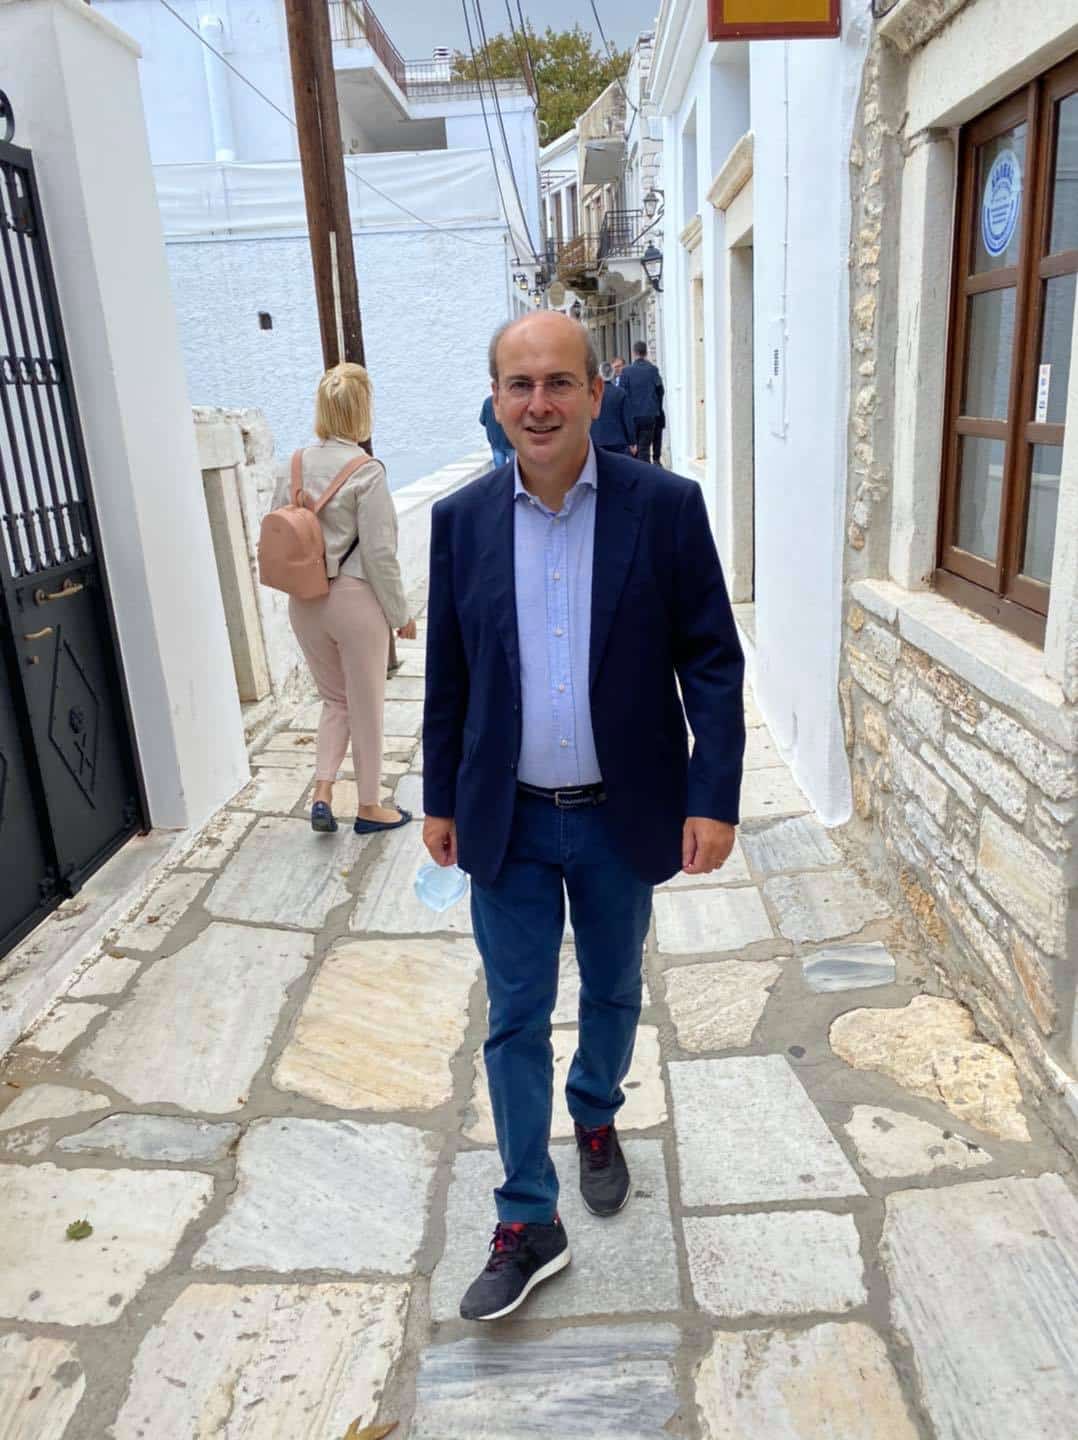 Το προσωπικό φωτογραφικό άλμπουμ του Κωστή Χατζηδάκη κατά την επίσκεψή του στη Νάξο